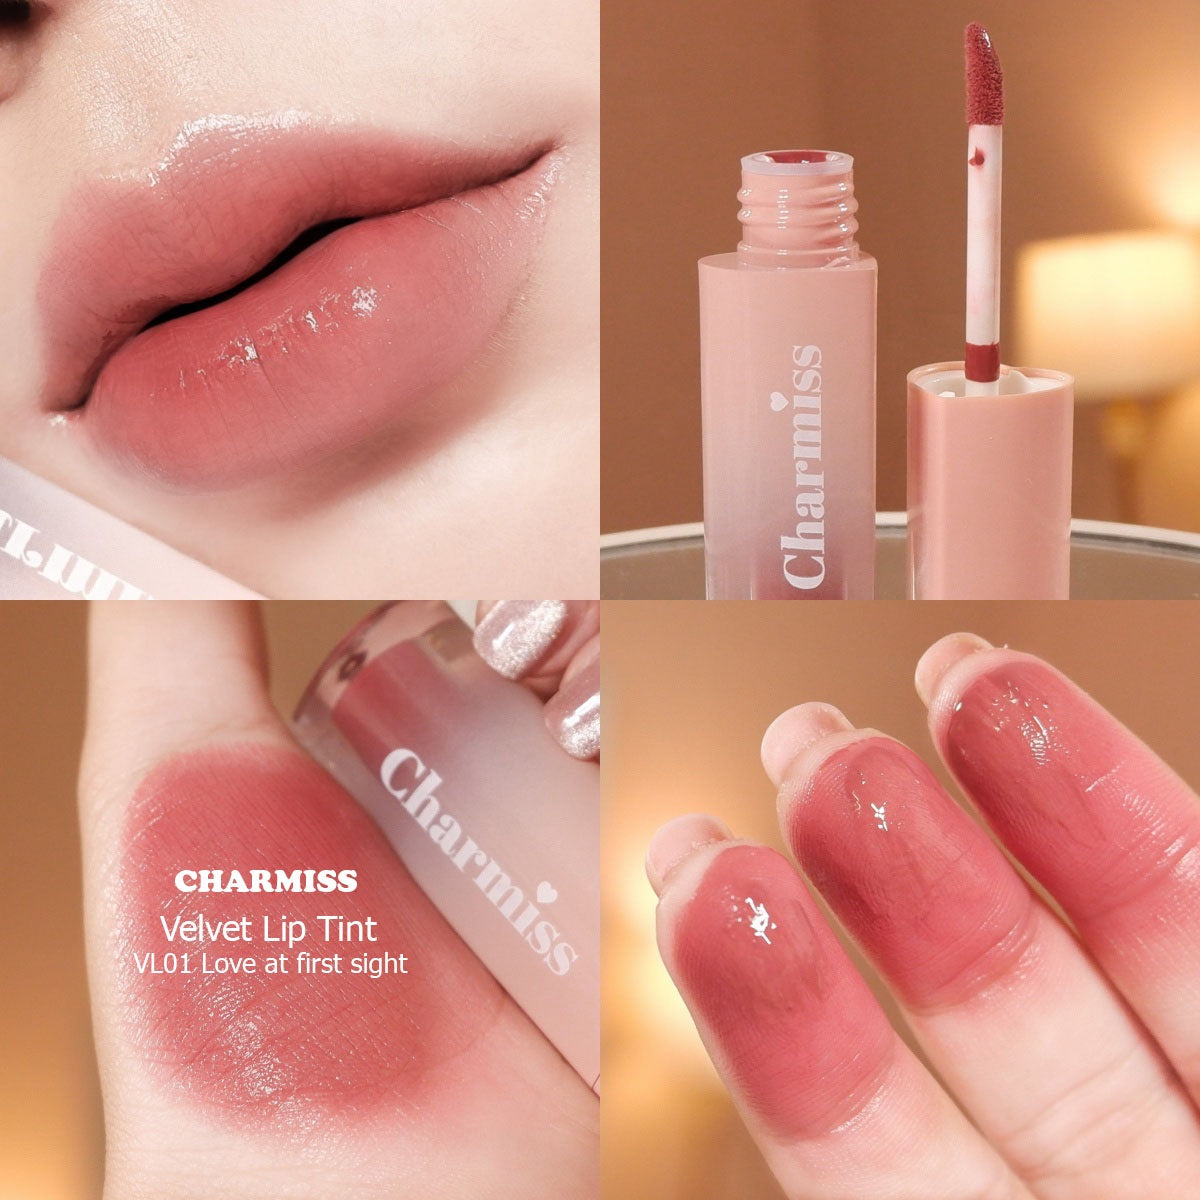 Charmiss Velvet Lip Tint & Glitter Lipgloss : ลิปทินท์ เวลเวท ลิป ทินท์ & ลิปกลอส กลิตเตอร์